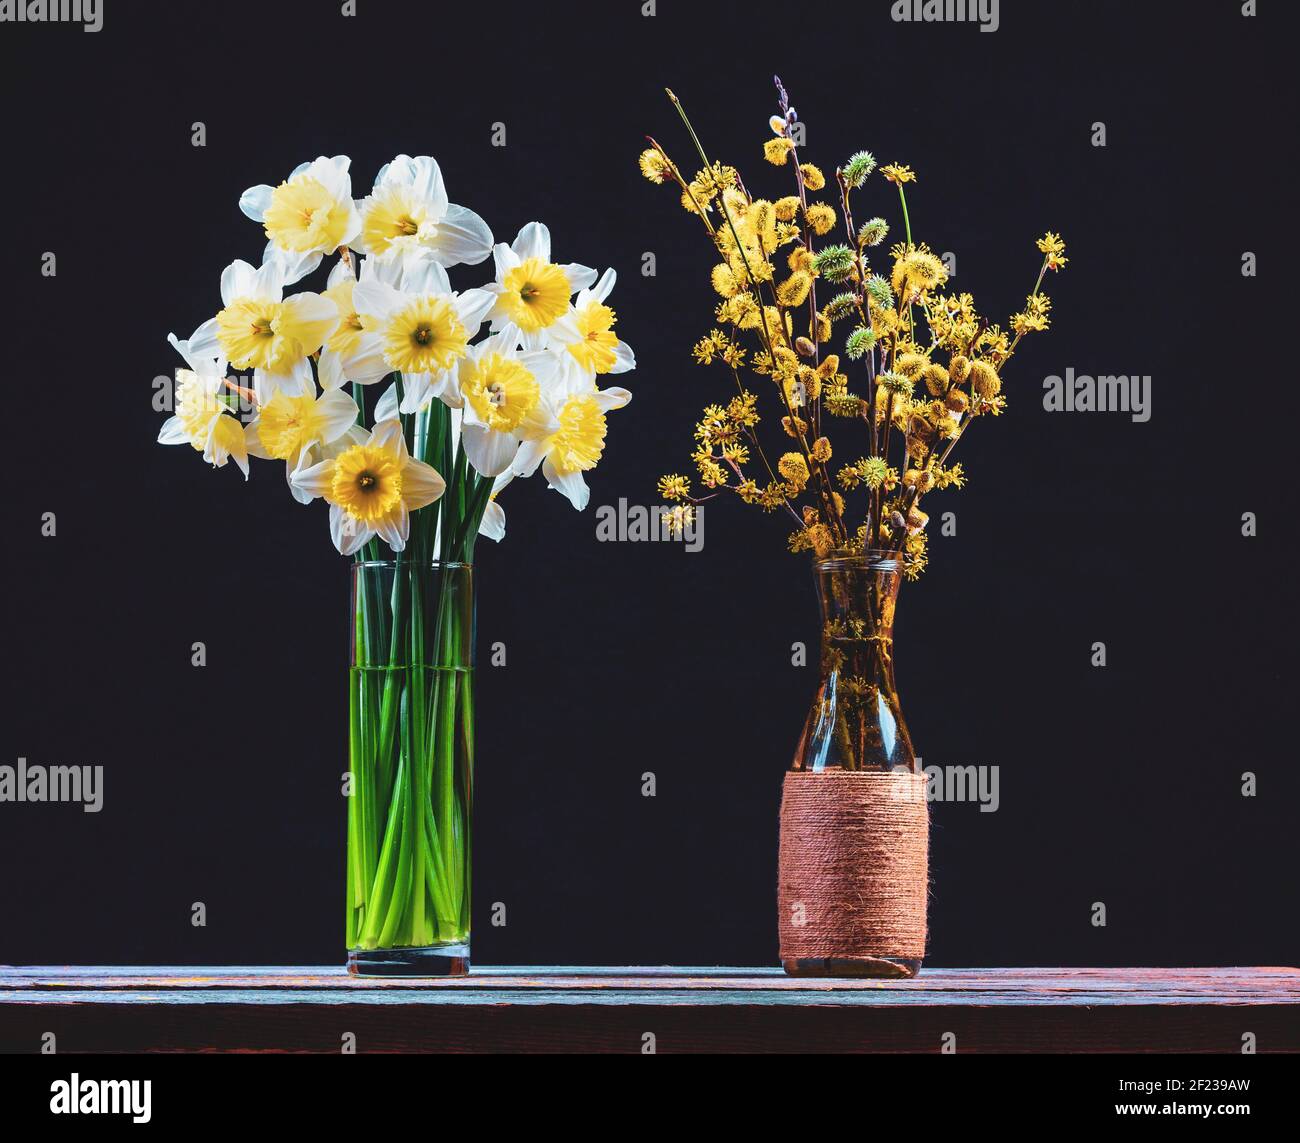 un bouquet di fiori di narcisi e un bouquet di fiori salice e dogwood rami con fiori gialli in vasi di vetro su un tavolo di legno su un b nero Foto Stock